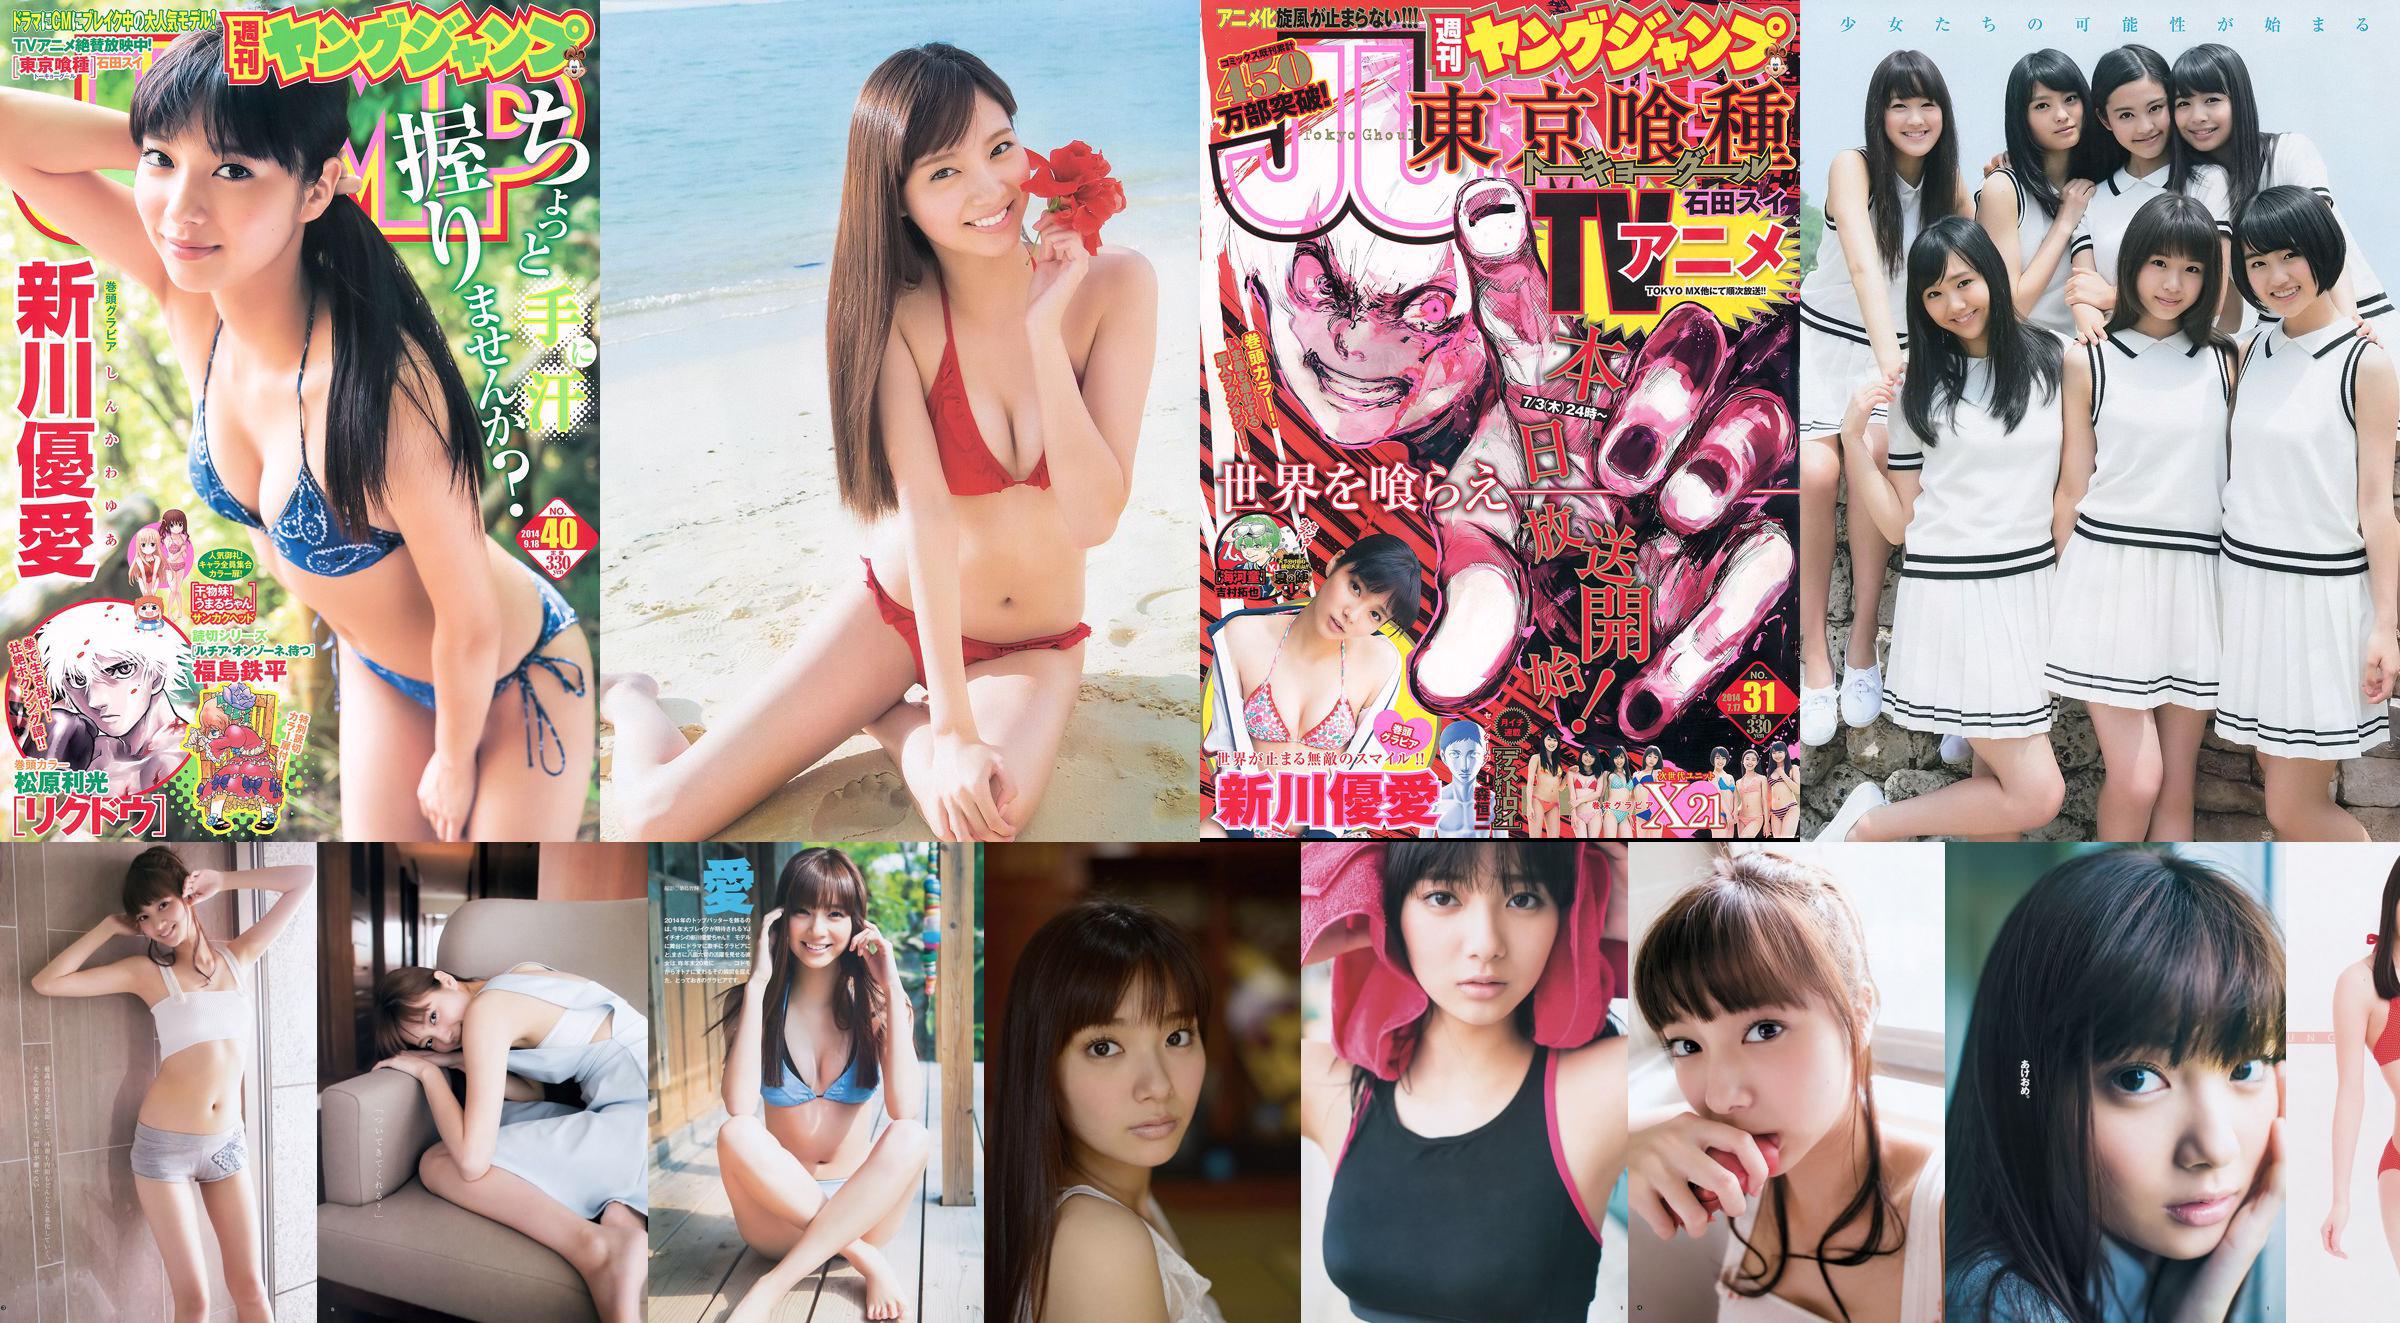 Yua Shinkawa 48 Group Hinako Kinoshita [Weekly Young Jump] 2014 No.06-07 照片 No.134616 第1頁